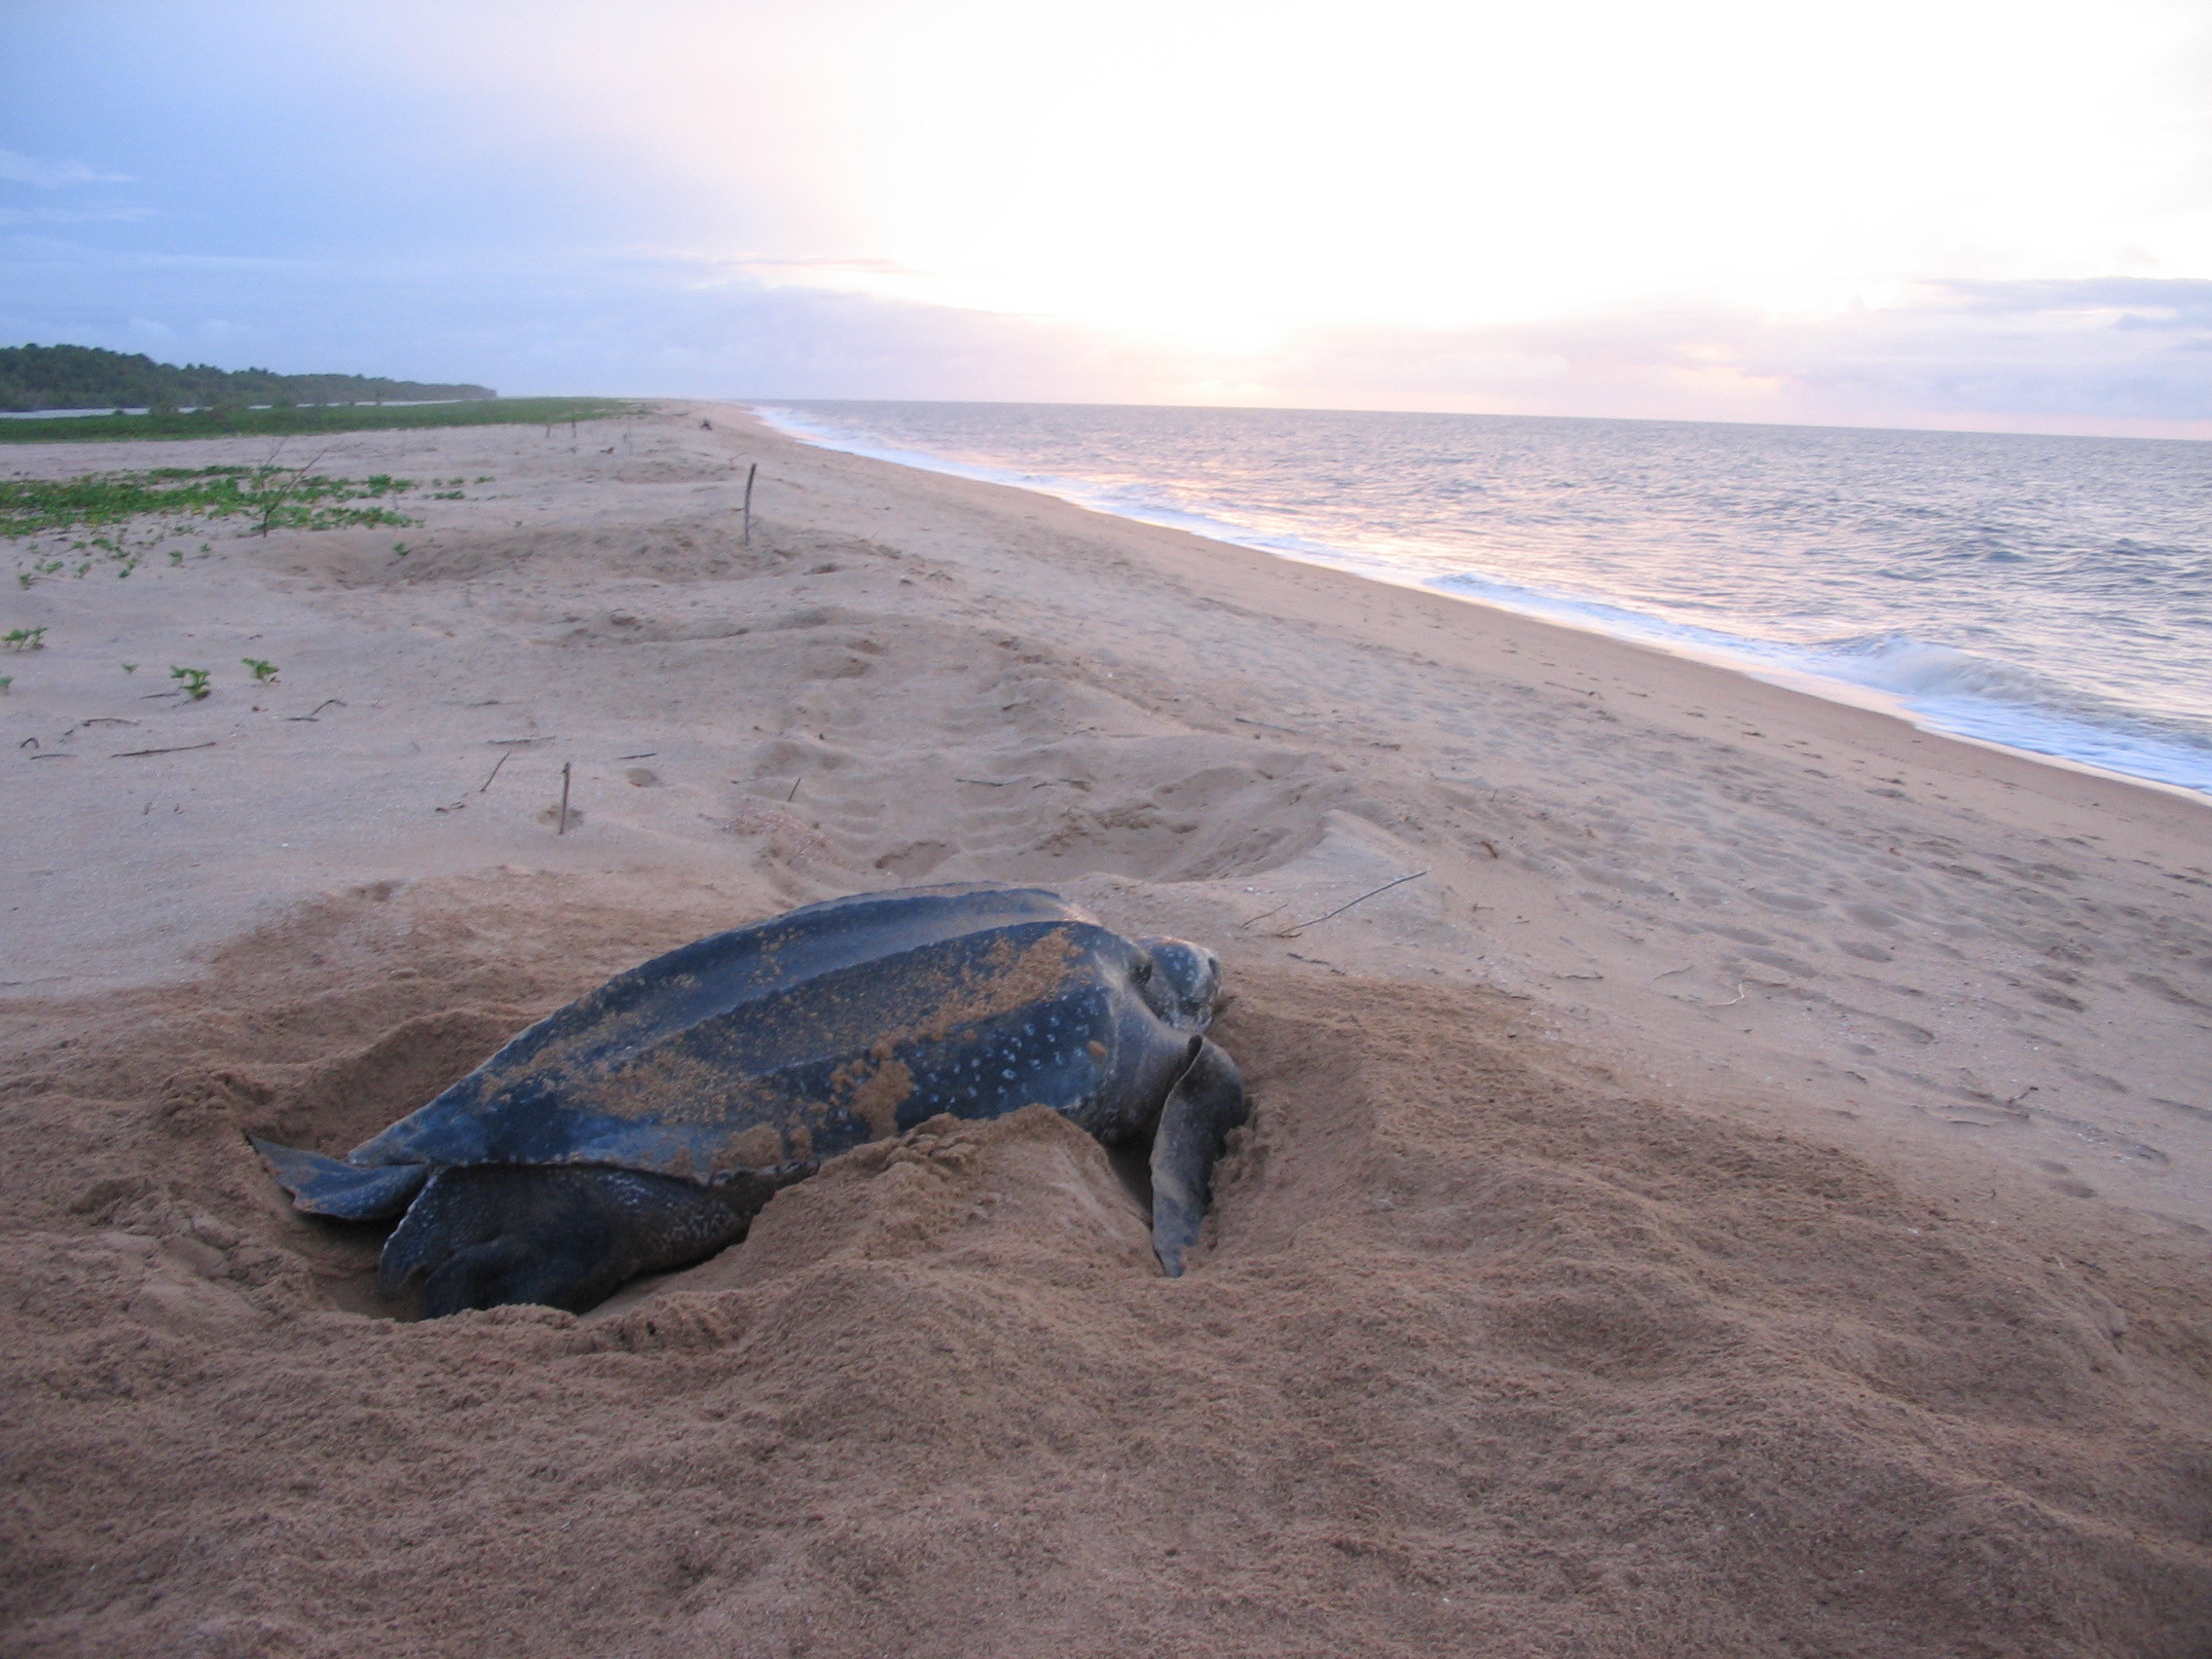 Leatherback sea turtle nesting. PC - JuliasTravels